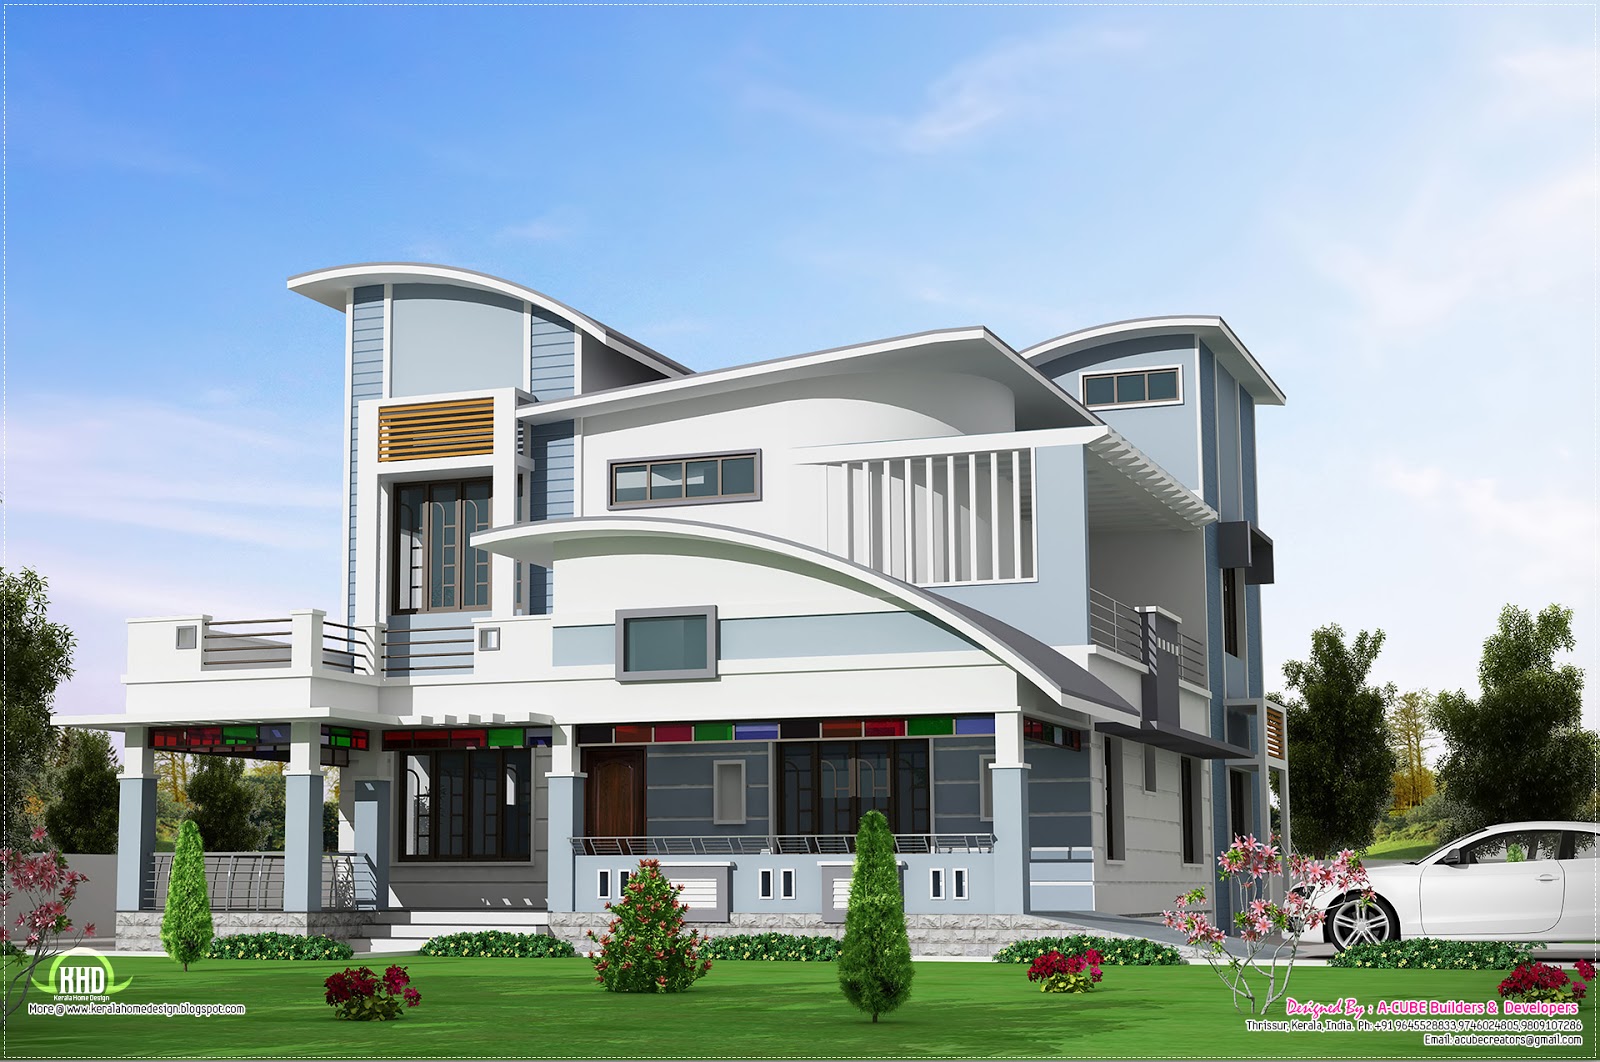  Modern  unique  style villa design  House  Design  Plans 